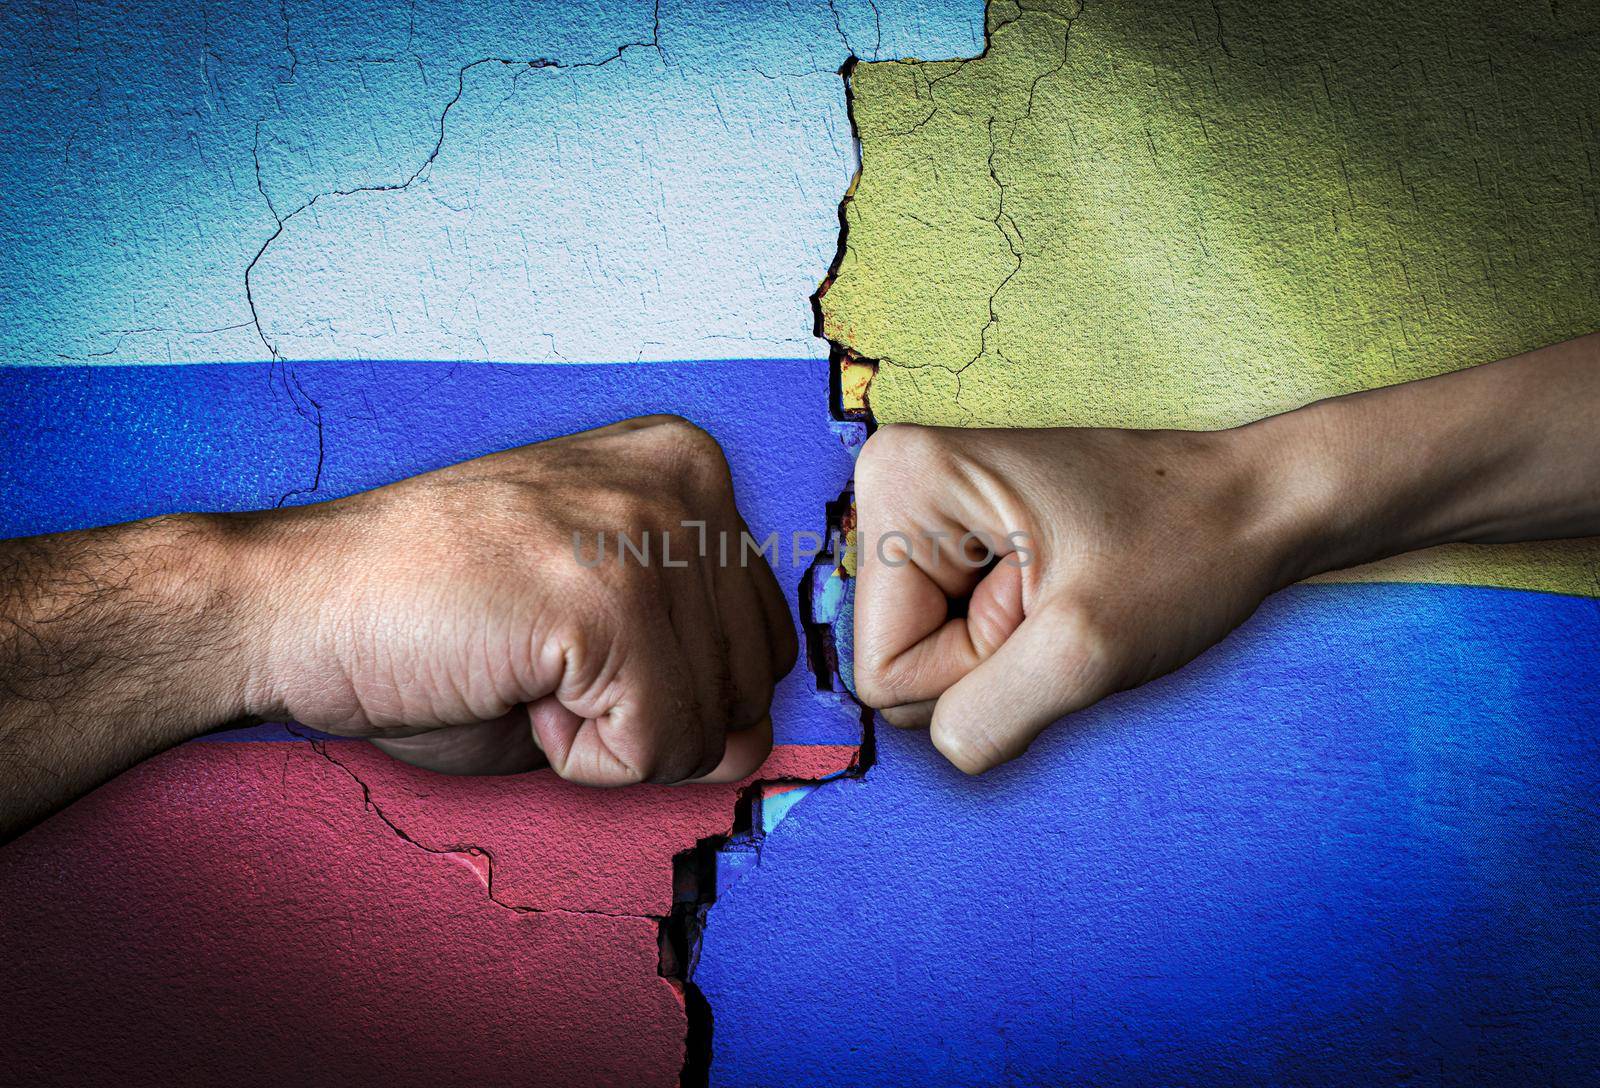 Russia vs Ukraine Two fists bumping, Russia vs Ukraine political conflict, Russia vs Ukraine flag, Russia vs Ukraine concept